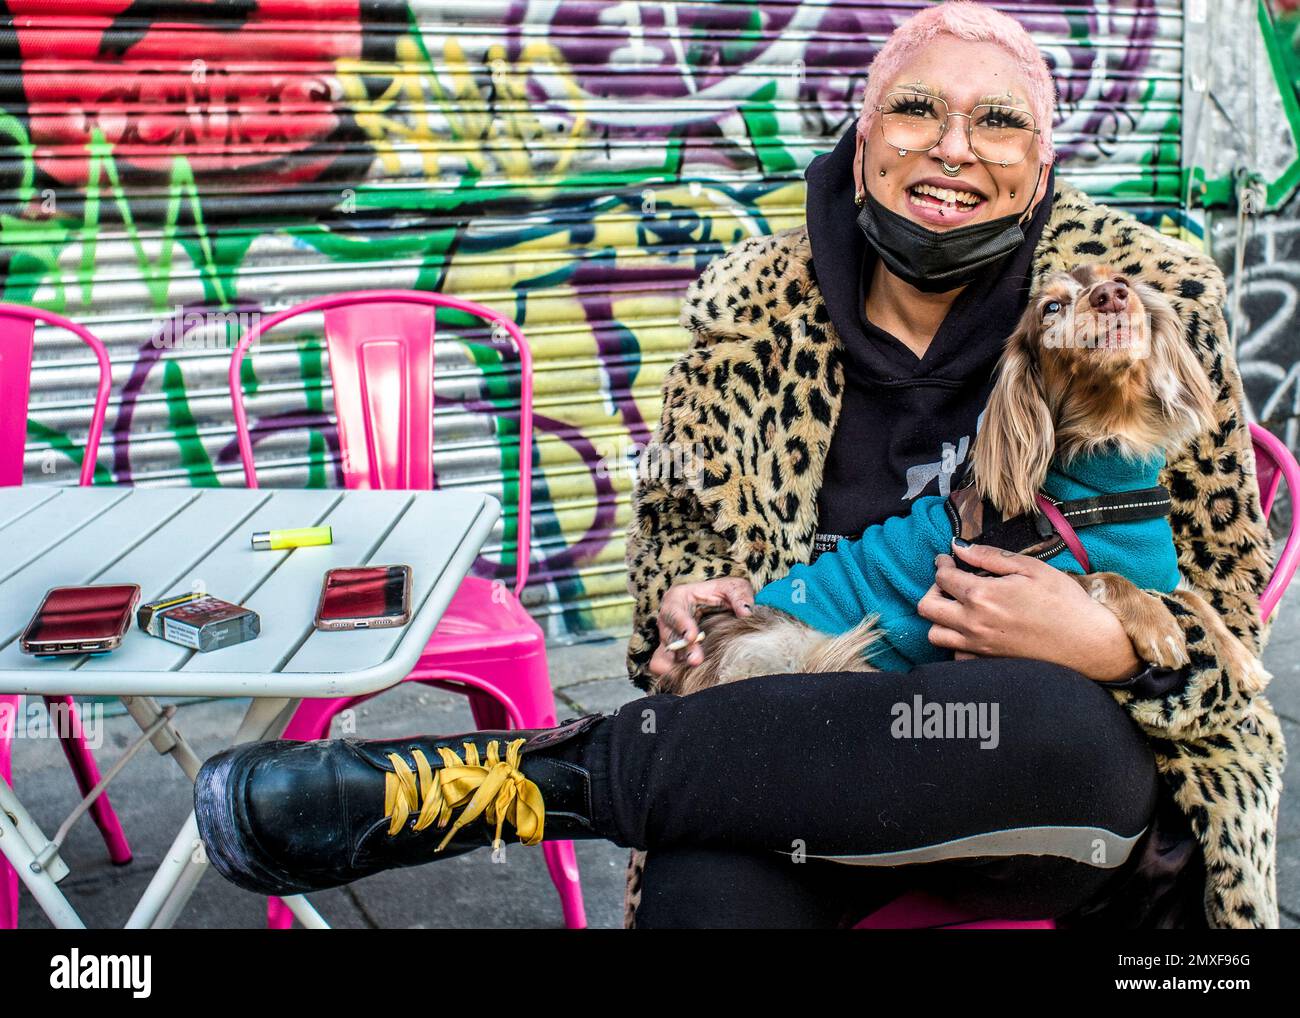 Weibliche Straßenhändlerin mit rosafarbenen Haaren trägt einen Mantel mit Leopardenmuster, Doc Marten Stiefel hält einen Hund, lächelt in die Kamera. Camden Markt Stockfoto